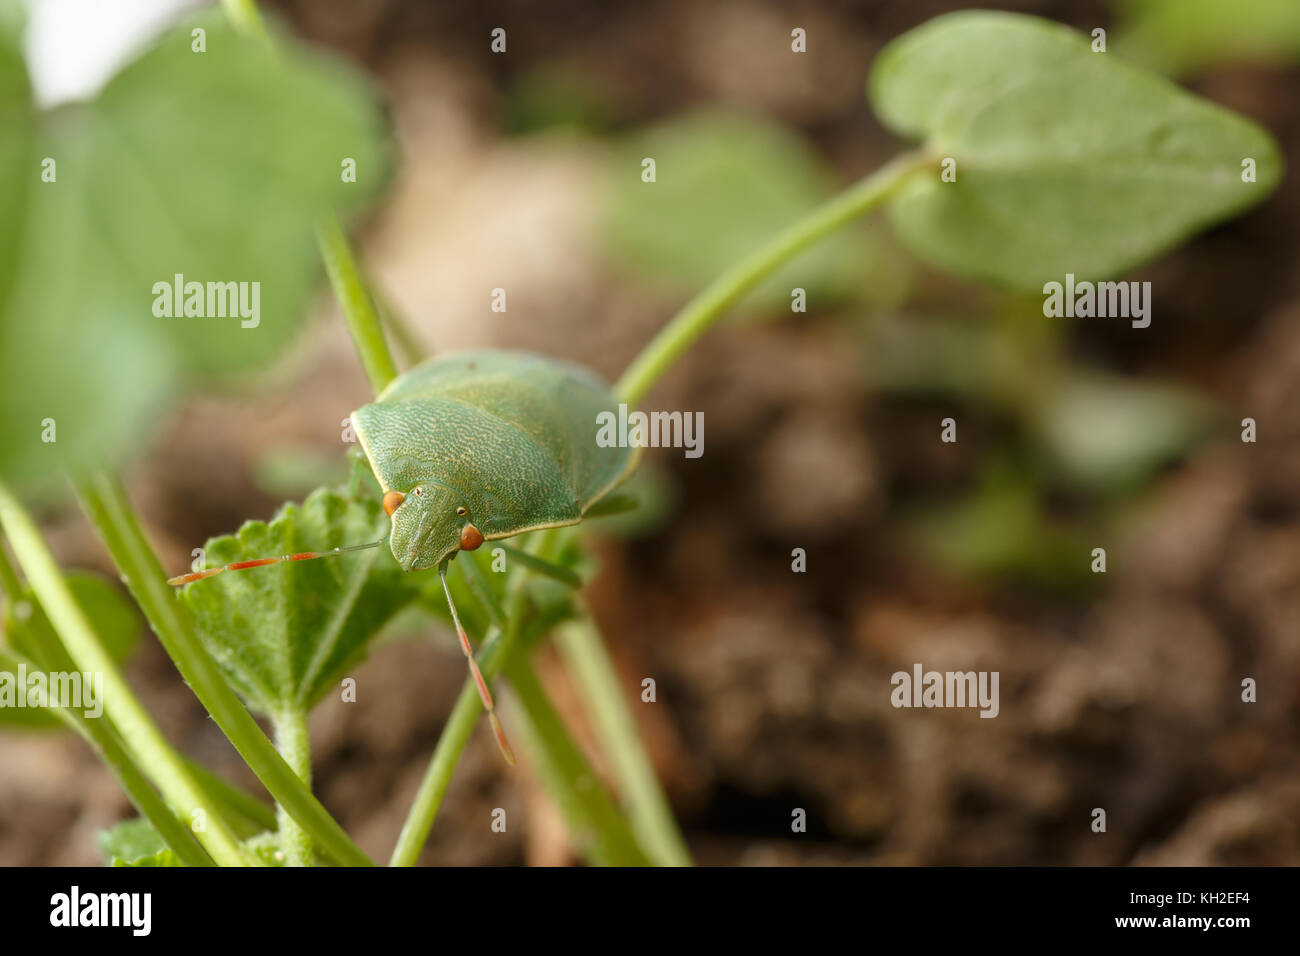 Détail des yeux rouges et antennes de southern green stink bug qui est à la recherche d'appareil photo. Nezara viridula est considéré comme l'insecte dans l'agriculture Banque D'Images